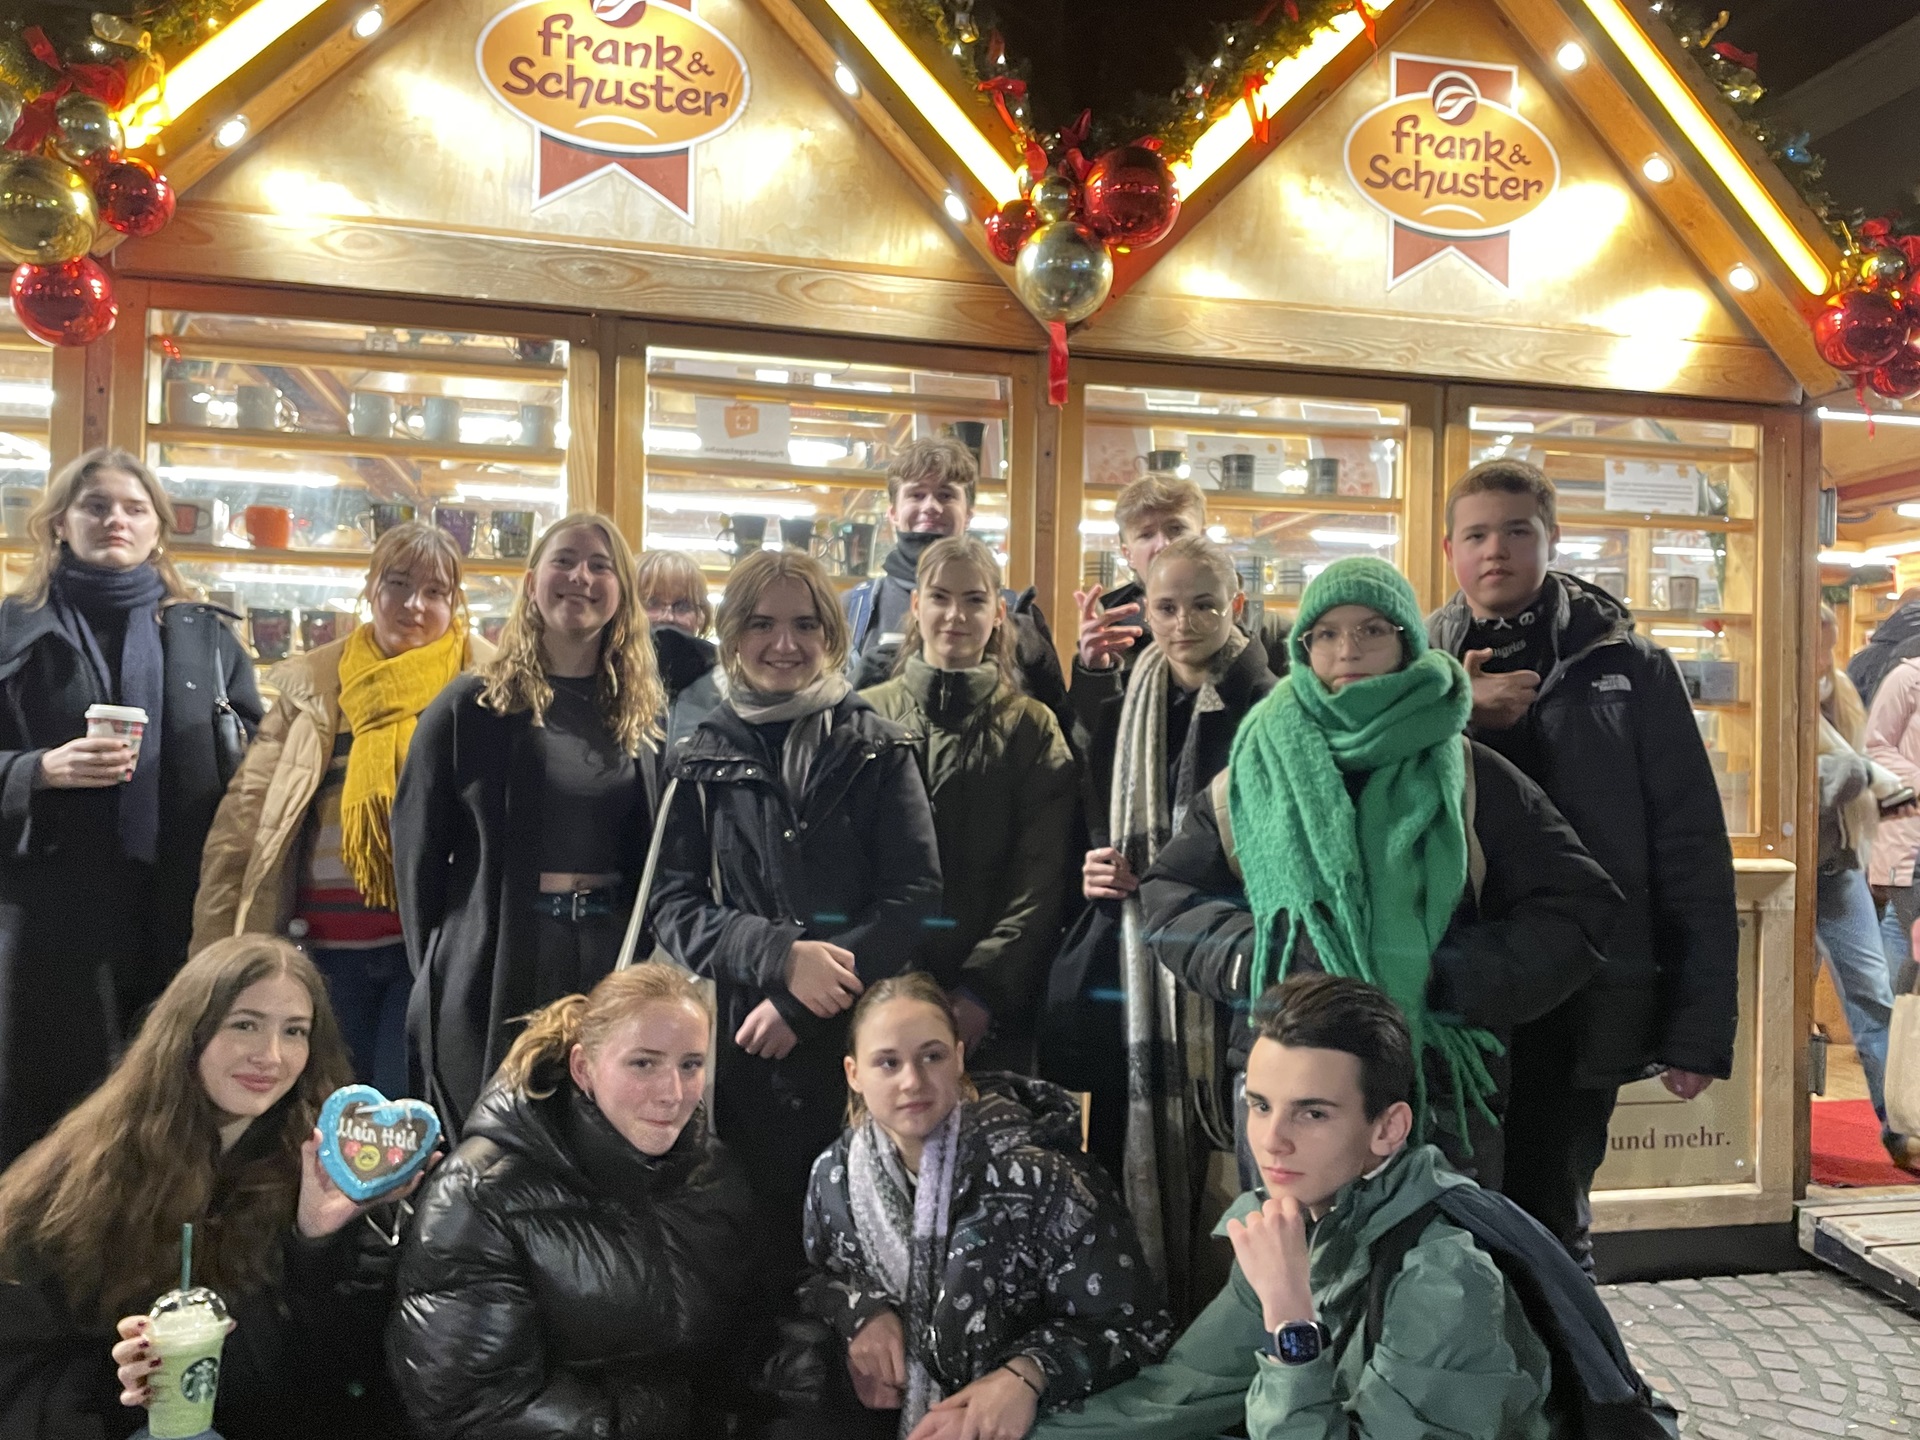 Katalikiško jaunimo grupės išvyka į Heidelbergą (Foto: D. Kriščiūnienė)